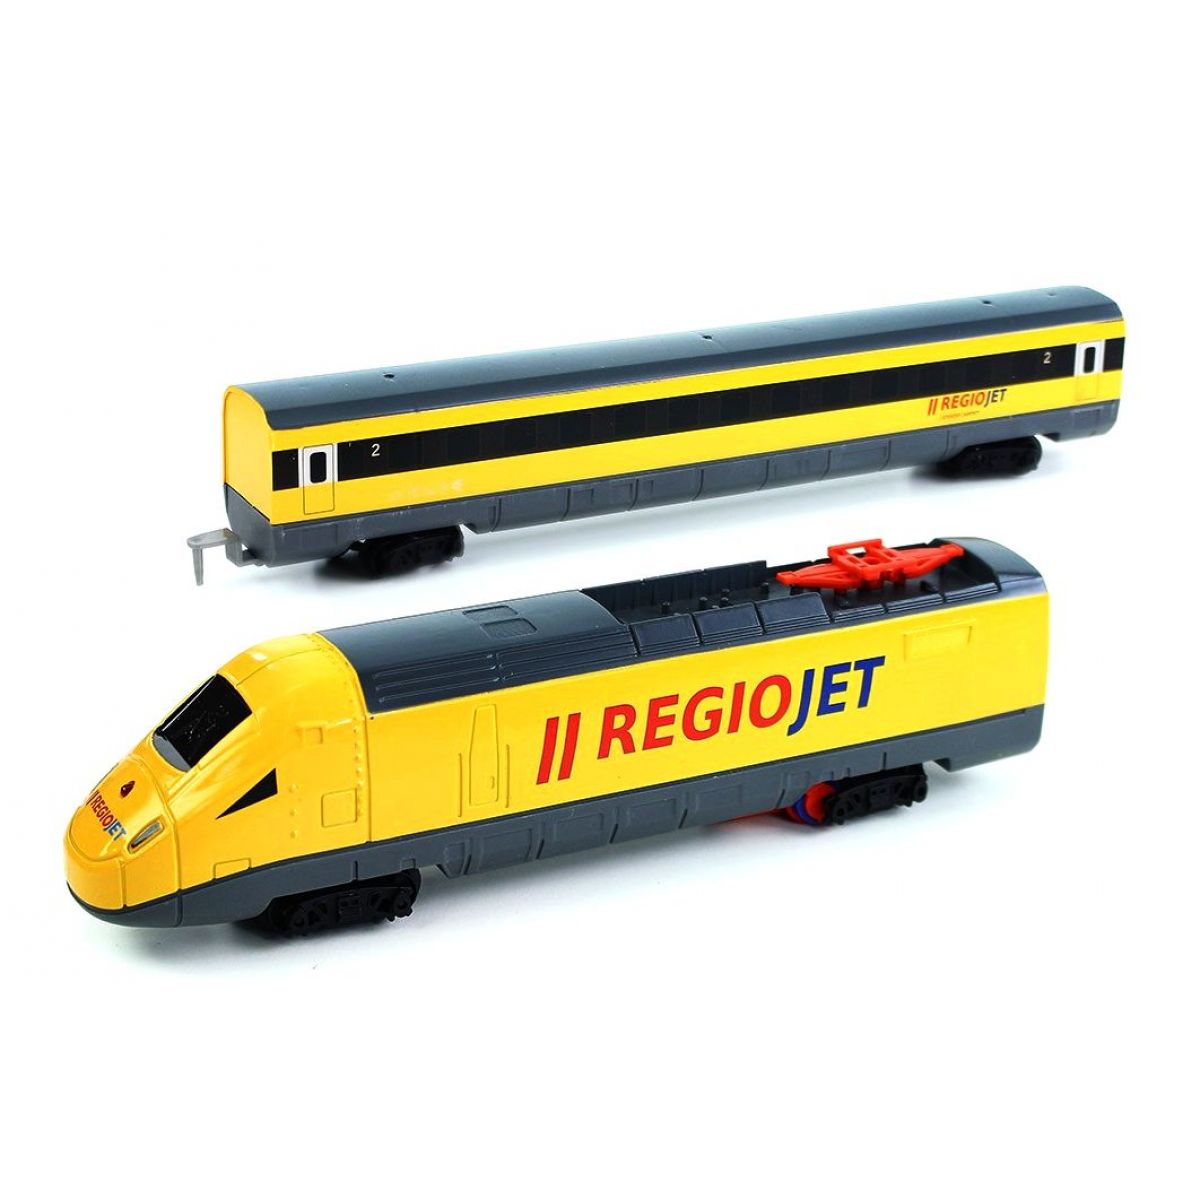 Rappa vlak žlutý RegioJet se zvukem a světlem funkční model soupravy